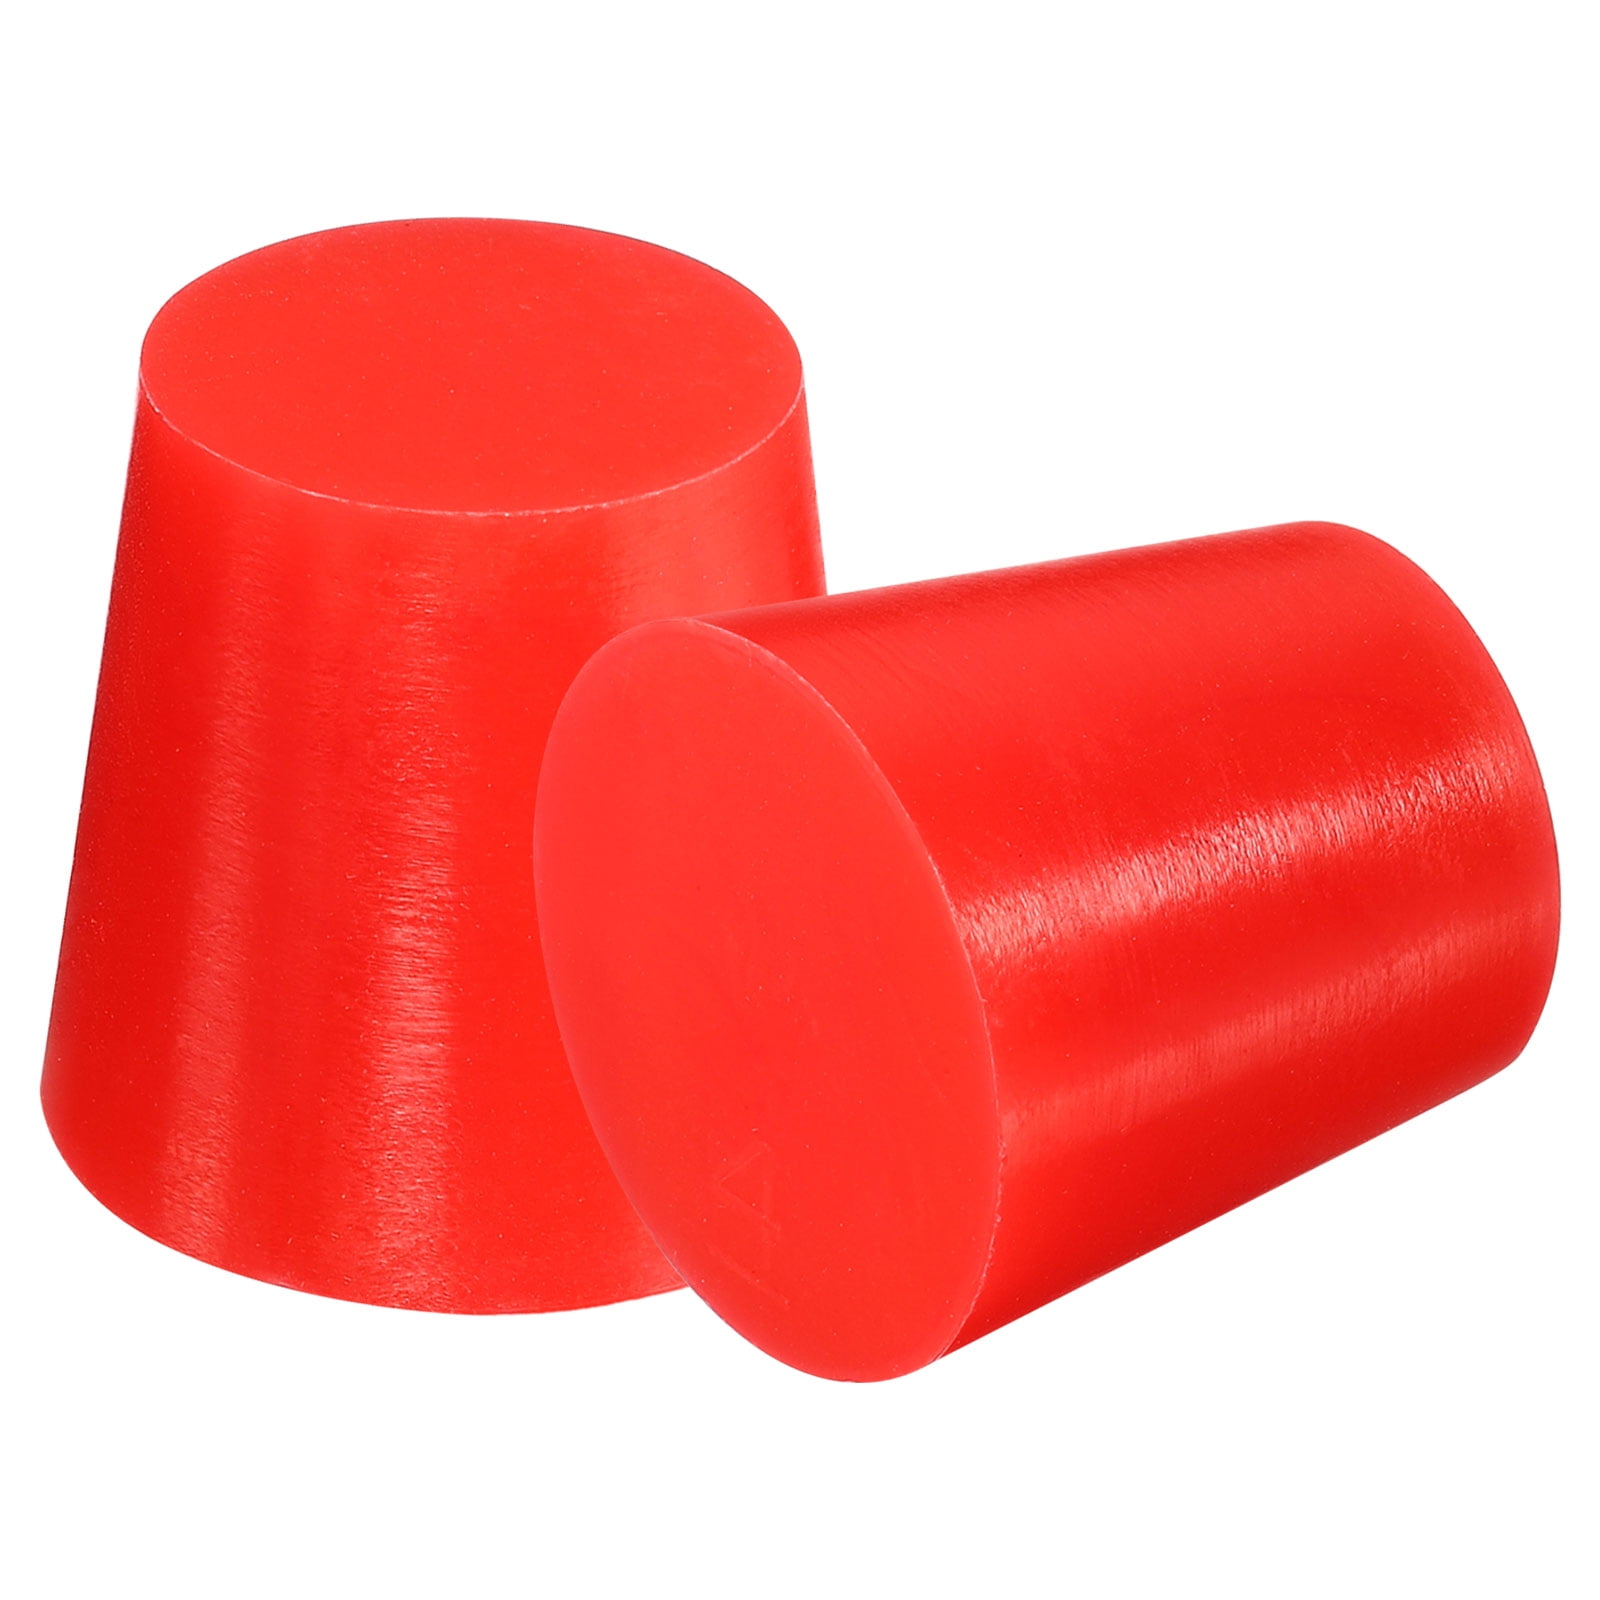 Red Rubber Pin Backs - 20 Pack – Kolorspun